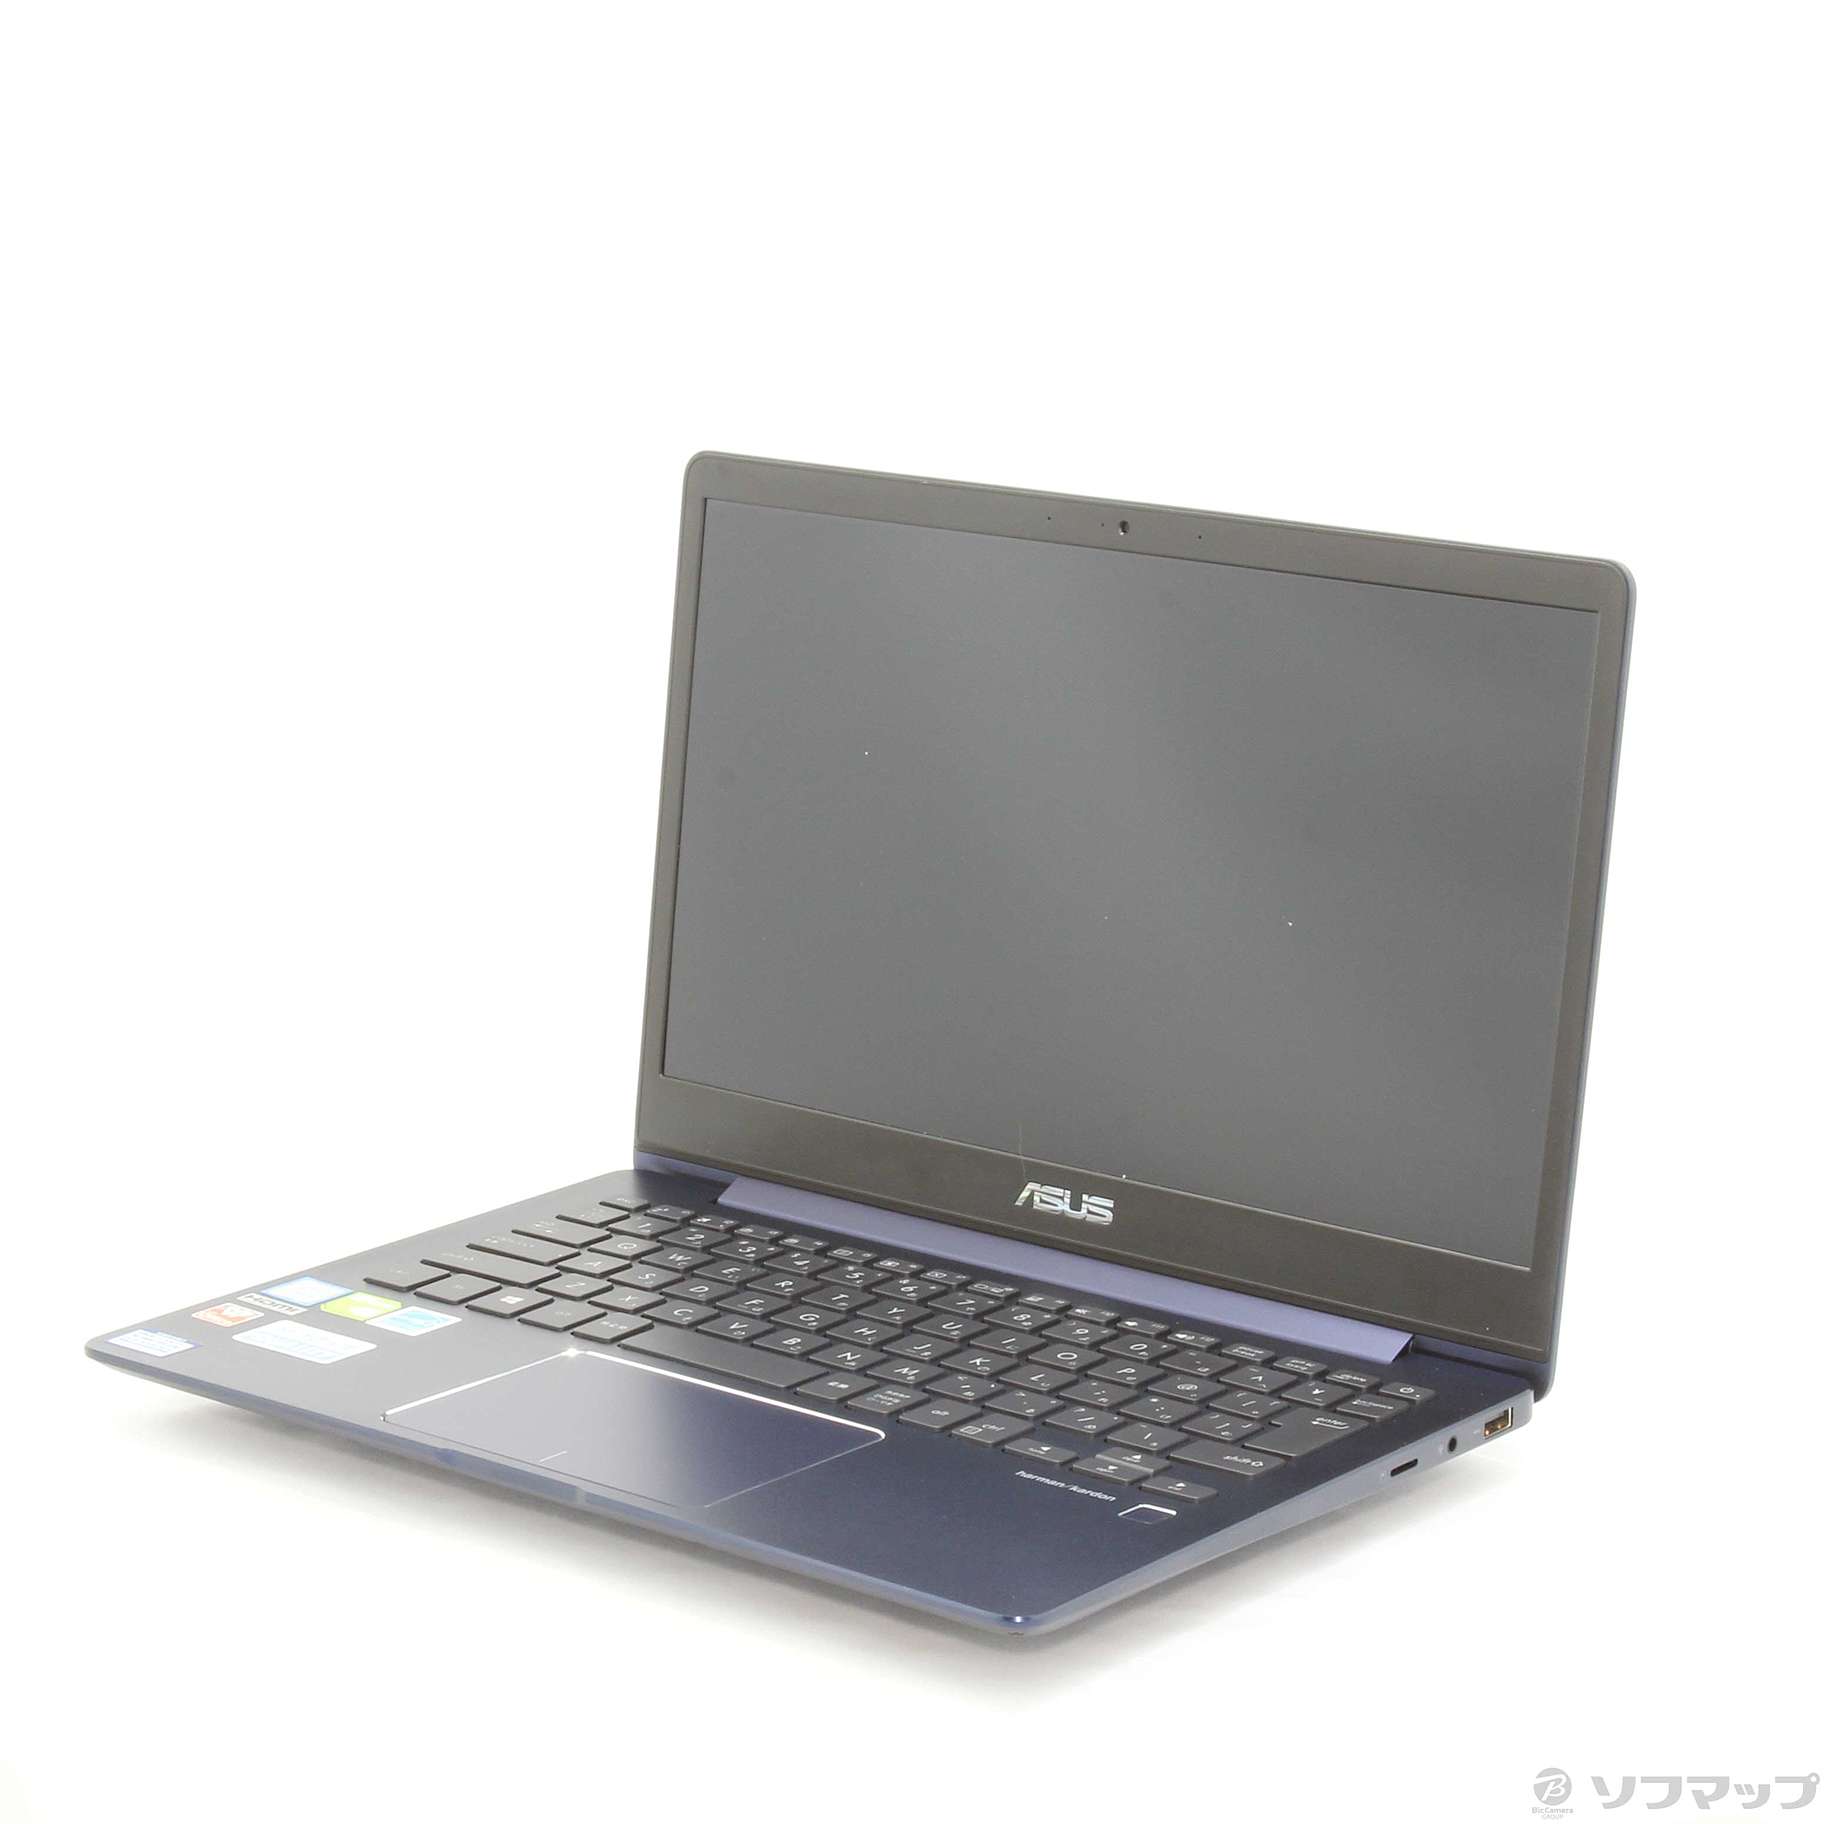 ASUS(エイスース) ZenBook 13.3 UX331UN-8250B - ノートパソコン